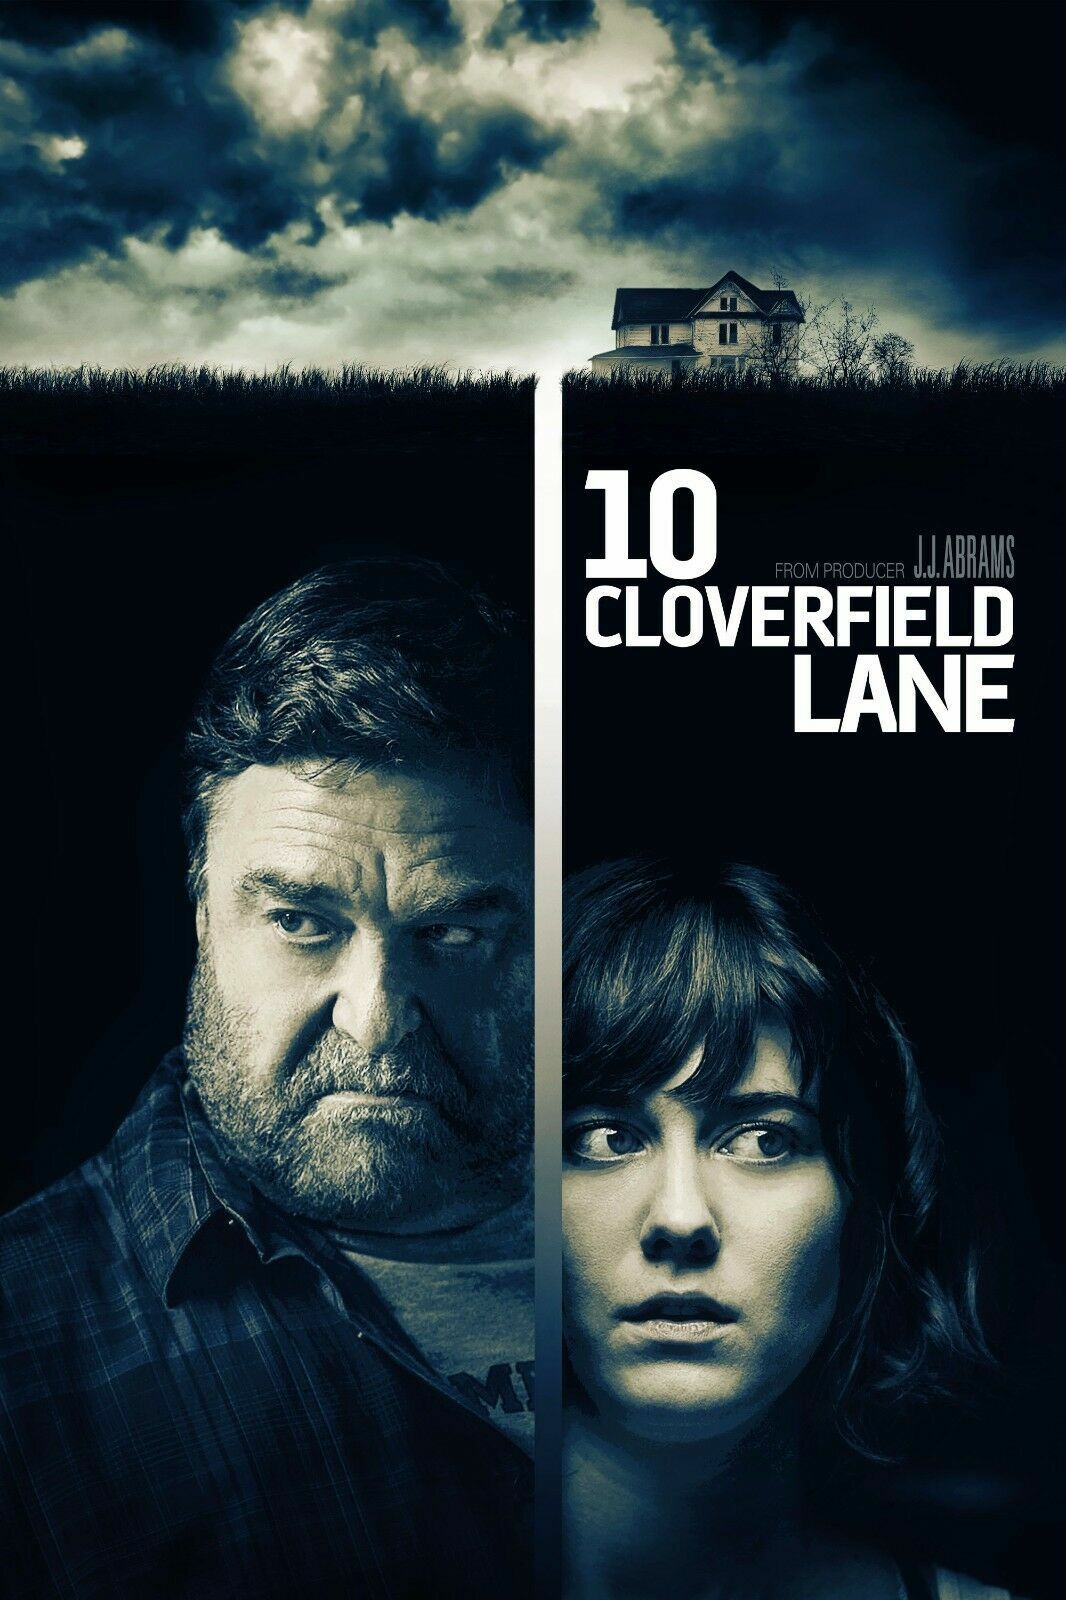 10 Cloverfield Lane / Cloverfield Lane 10 2016